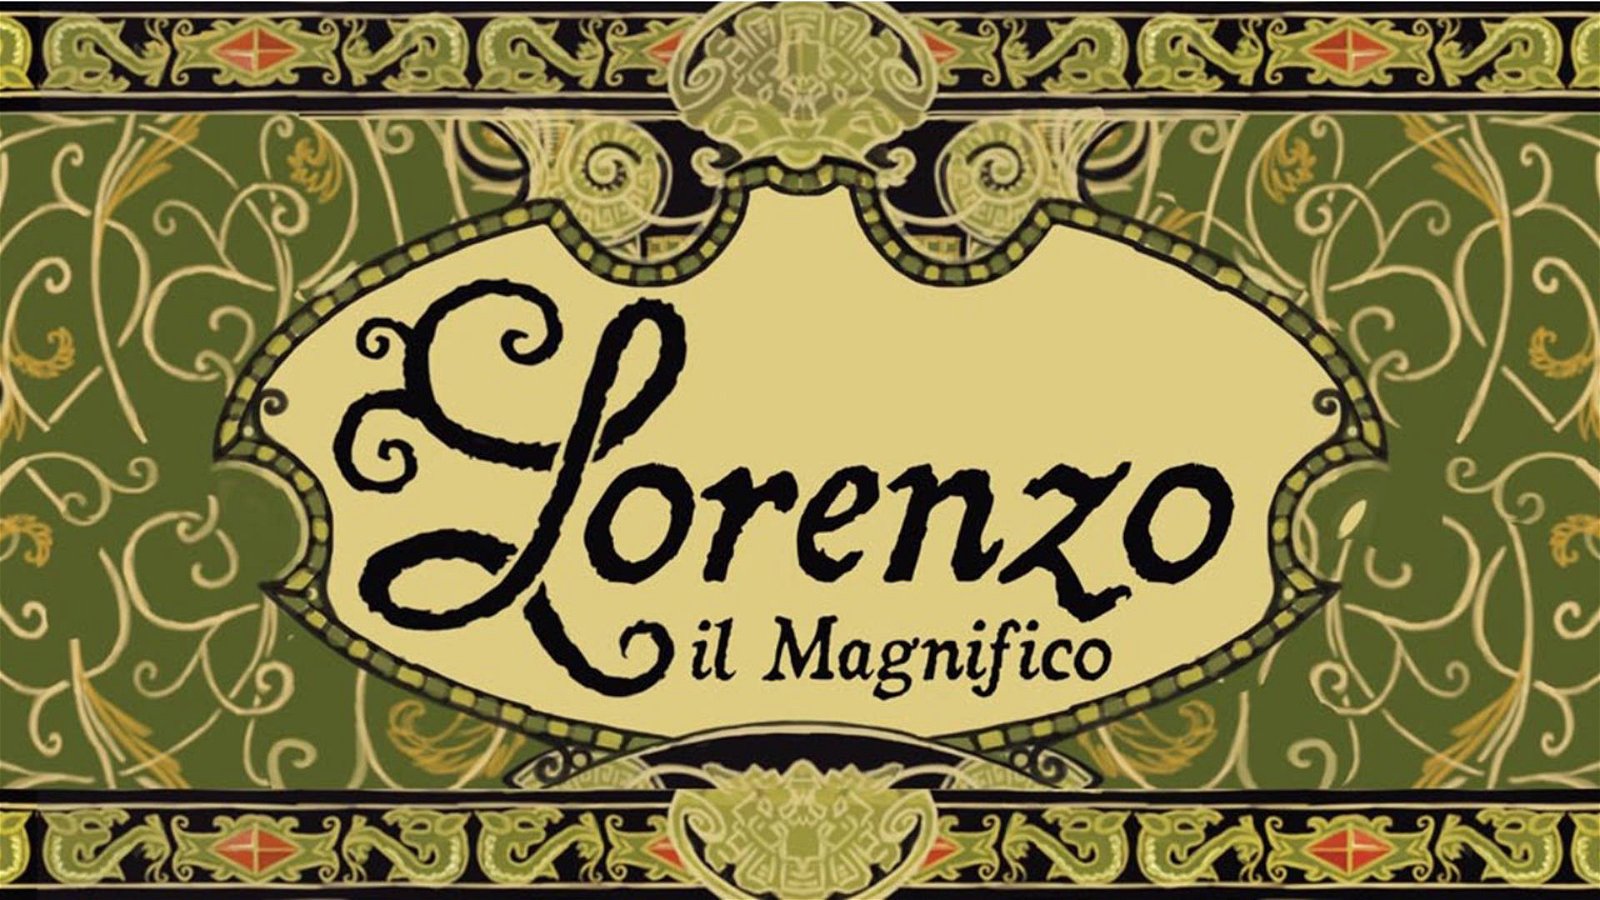 Immagine di Lorenzo il Magnifico, recensione: un gioco da tavolo rinascimentale